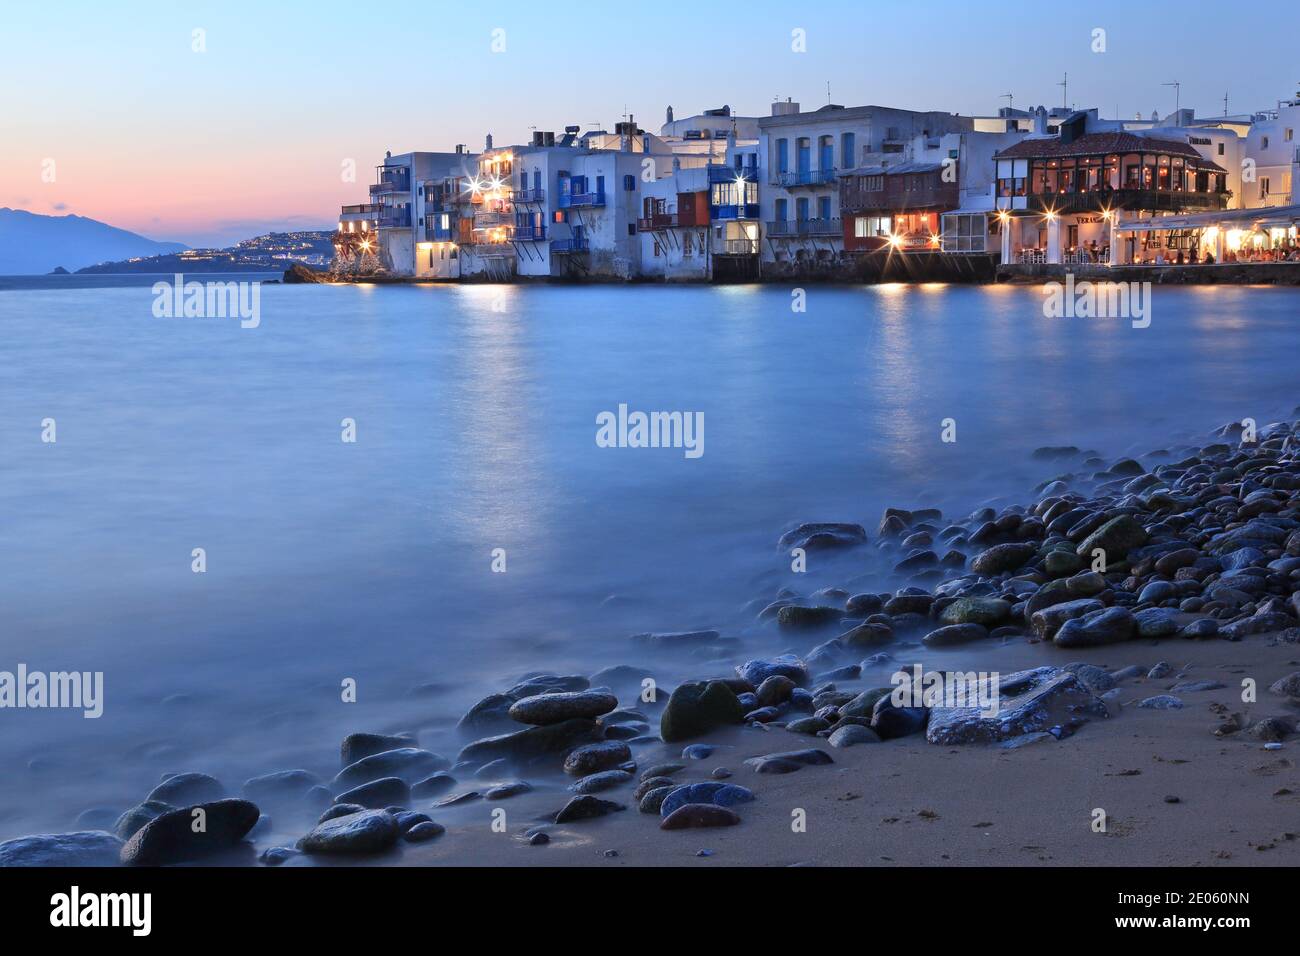 Heure bleue à l'île de Mykonos. Les maisons à l'arrière-plan est le quartier appelé la petite Venise, pour des raisons évidentes. Île de Mykonos, Grèce, Europe Banque D'Images